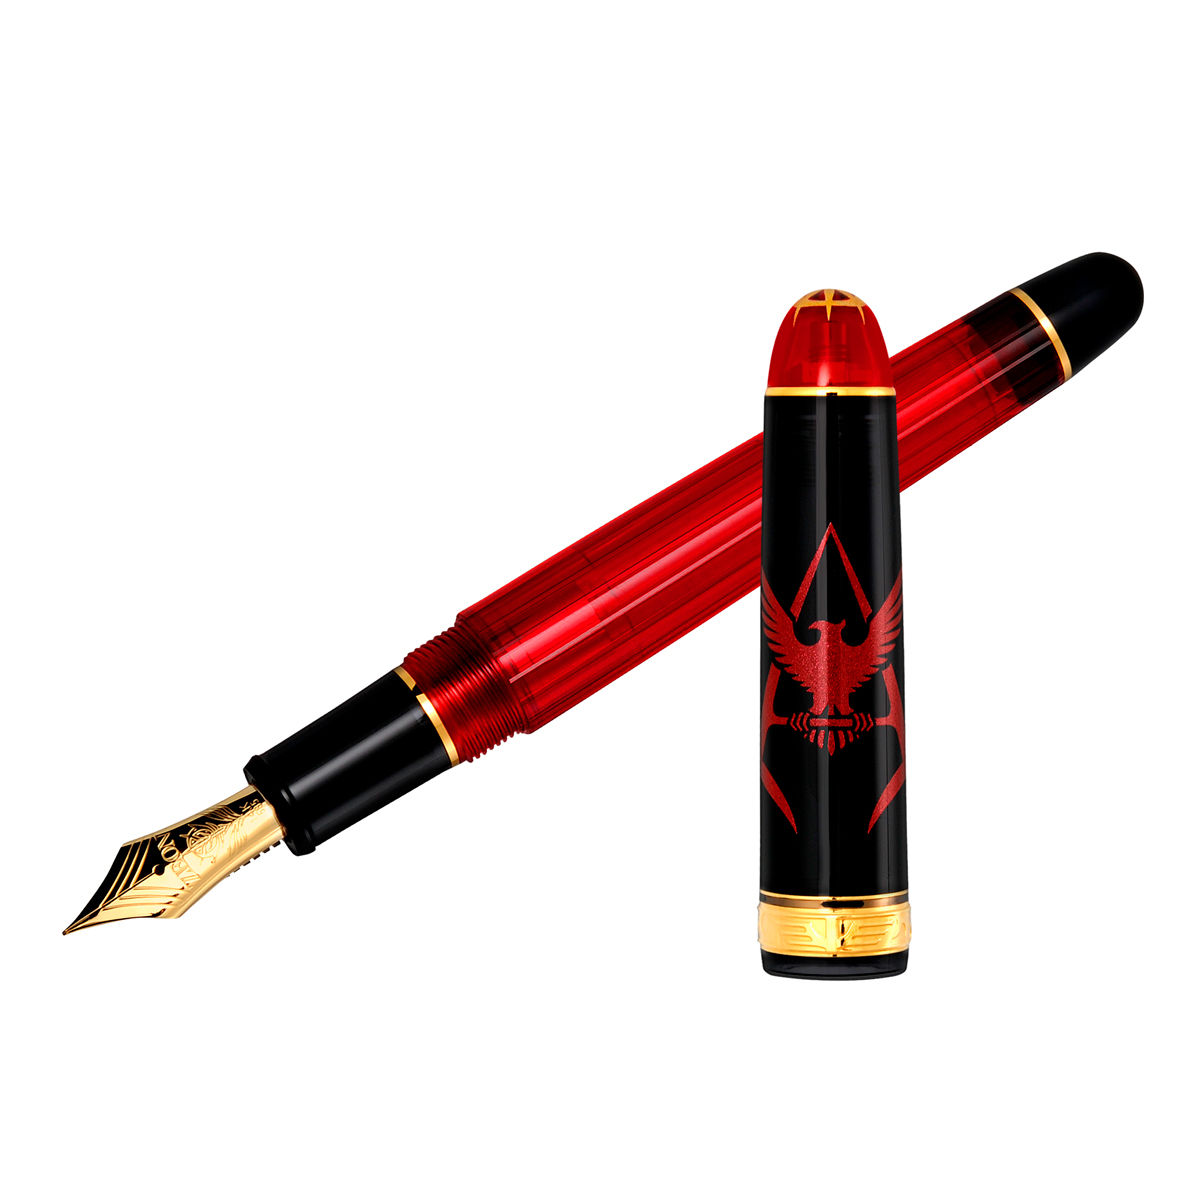 機動戦士ガンダム赤い彗星のシャア万年筆